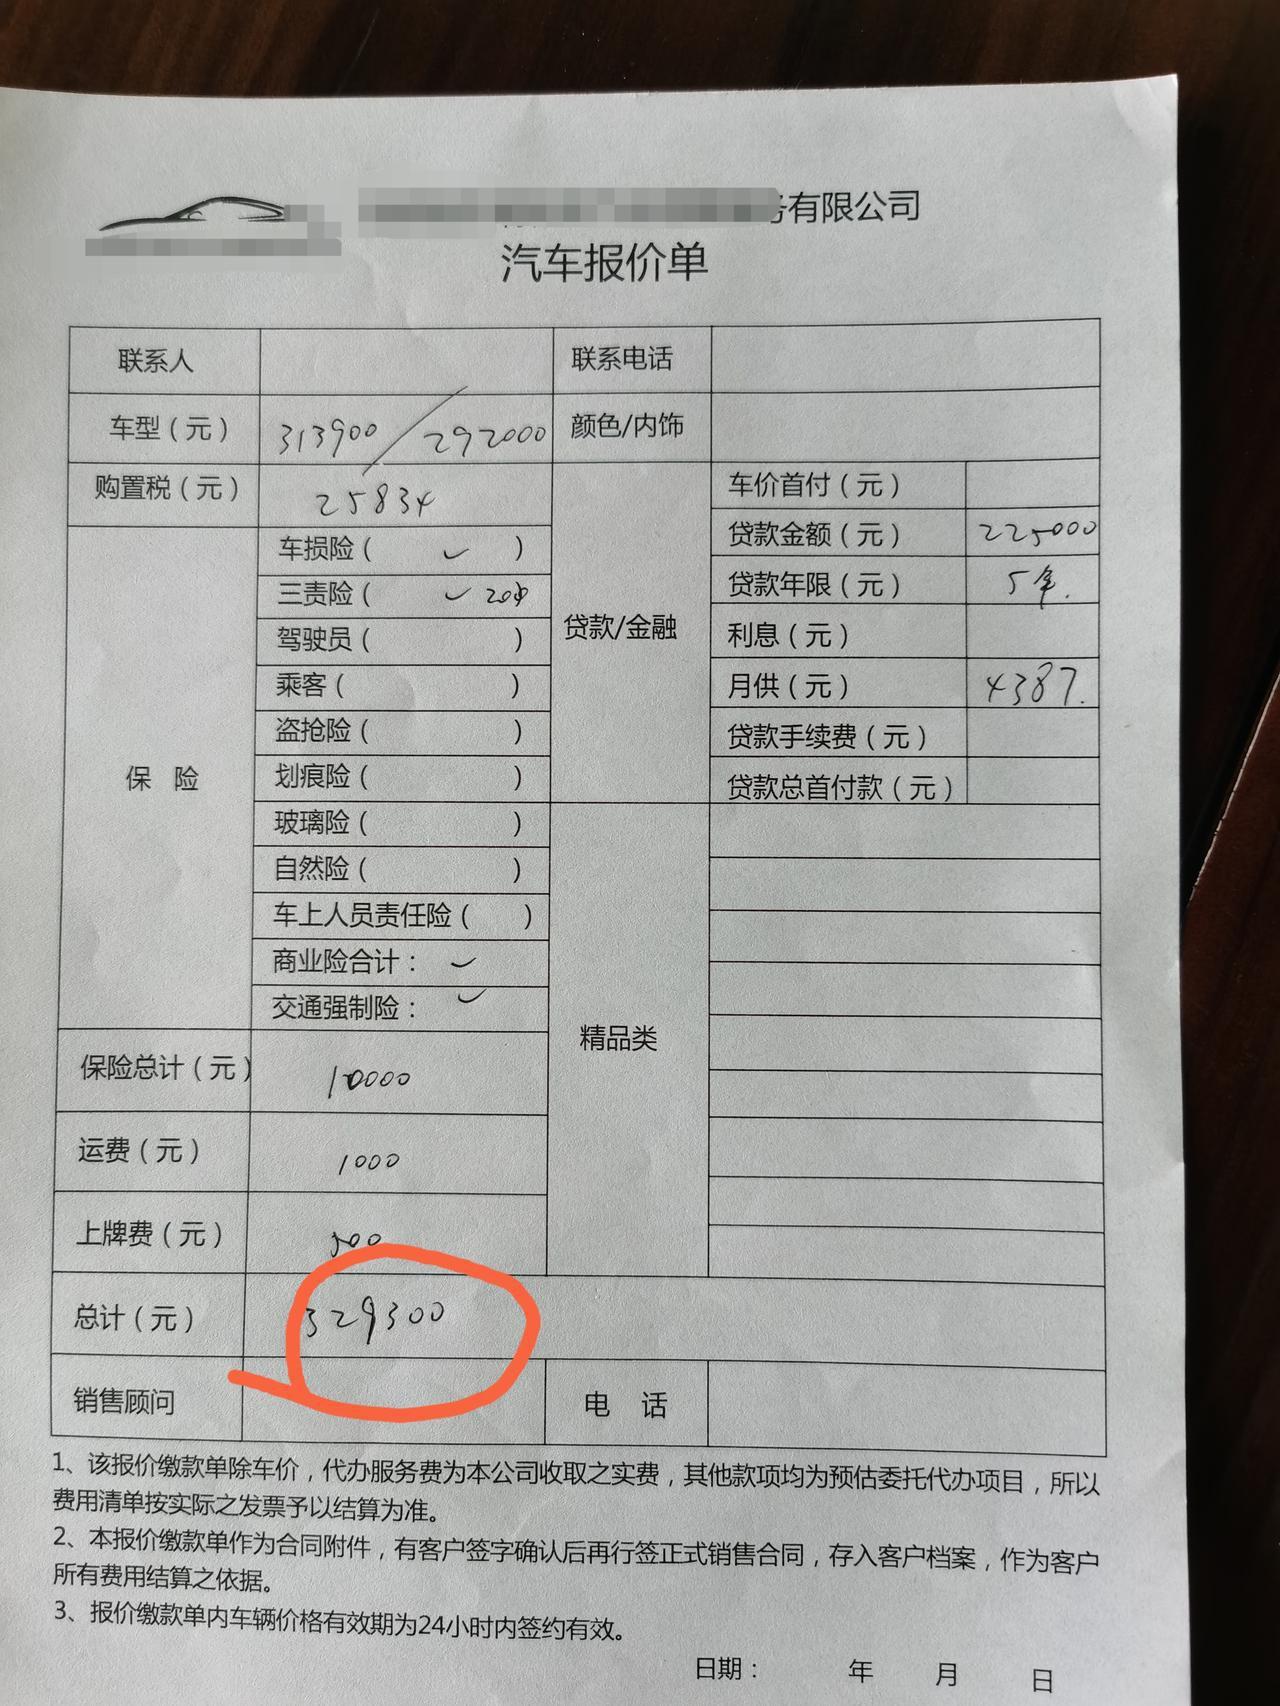 宝马3系 2021二次改款325iM运动 现在行情落地多少了？ 深圳报价在33.9左右。不知道真正落地大概多少能拿下。